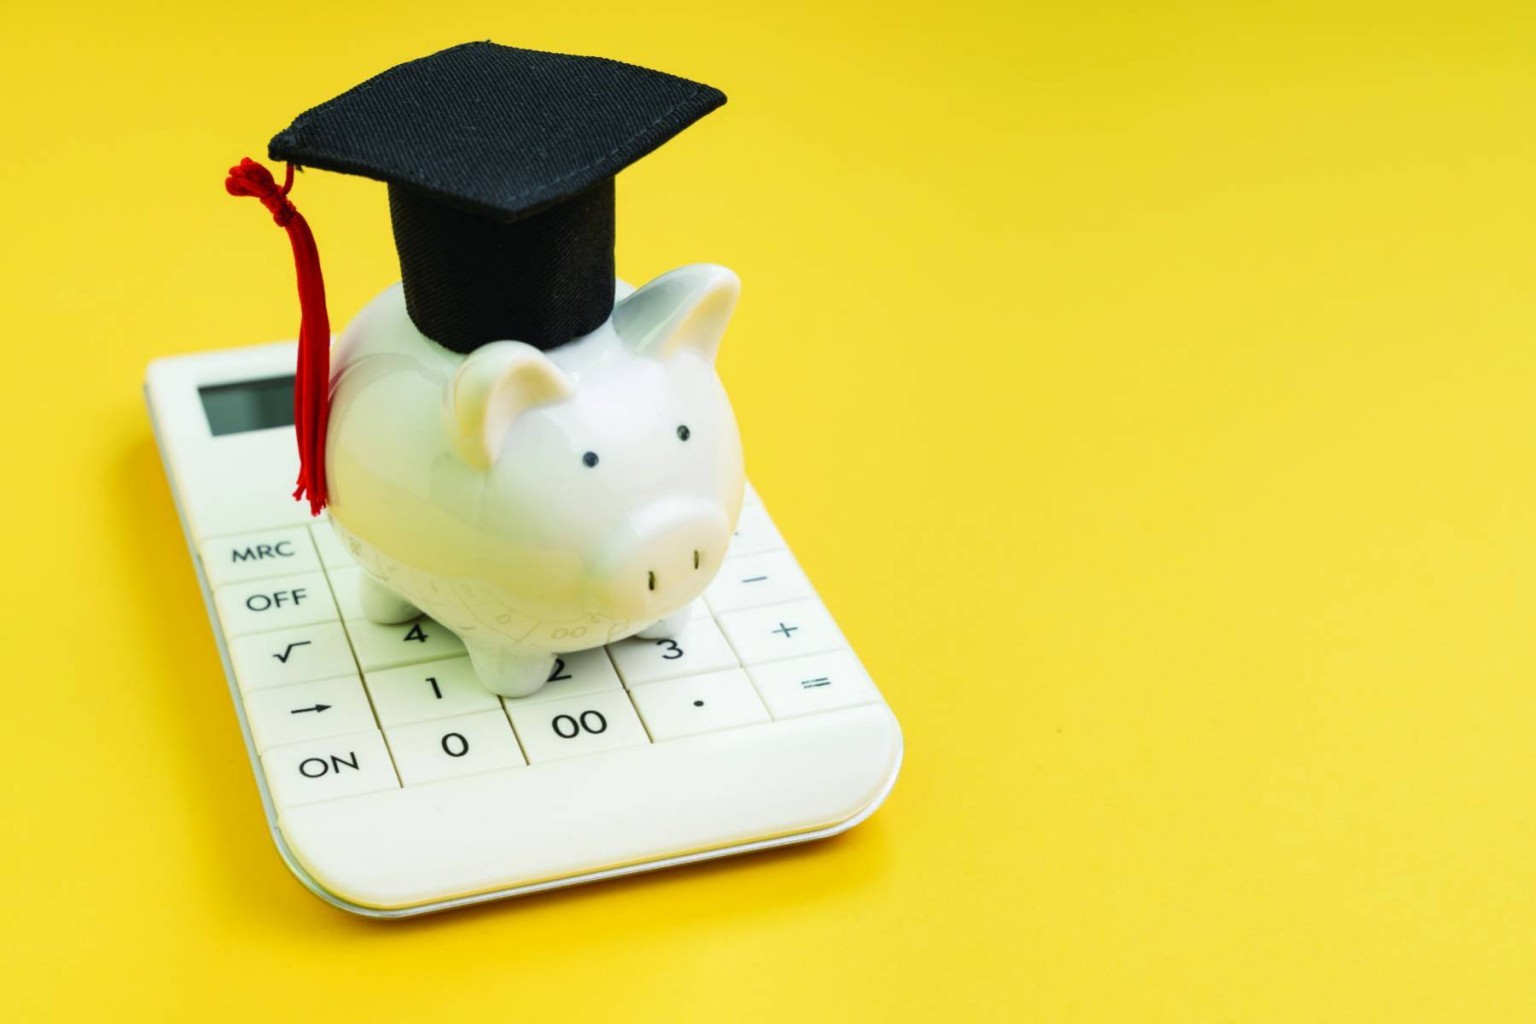 Todo lo que necesita saber sobre la financiación de la universidad con préstamos estudiantiles